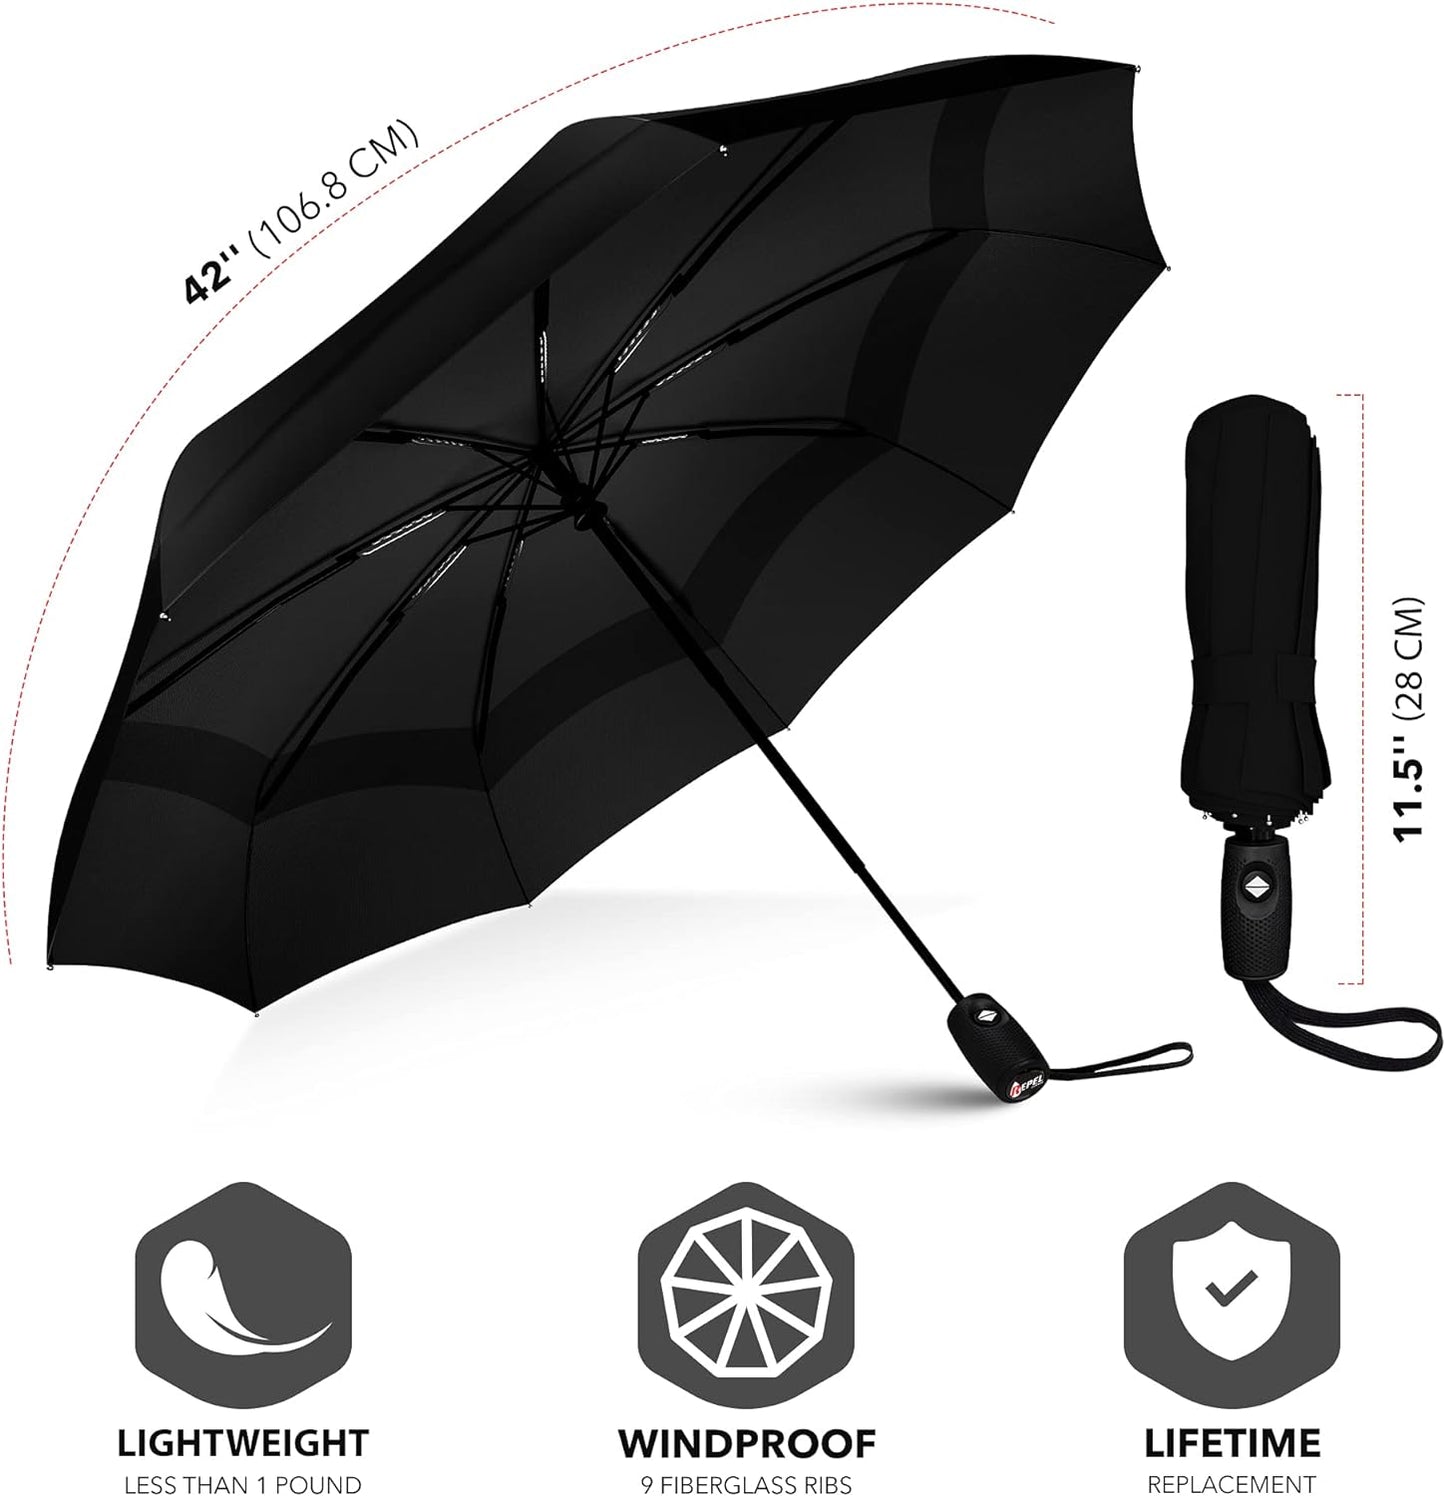 Hybrica GO-ON Premium Travel Umbrella